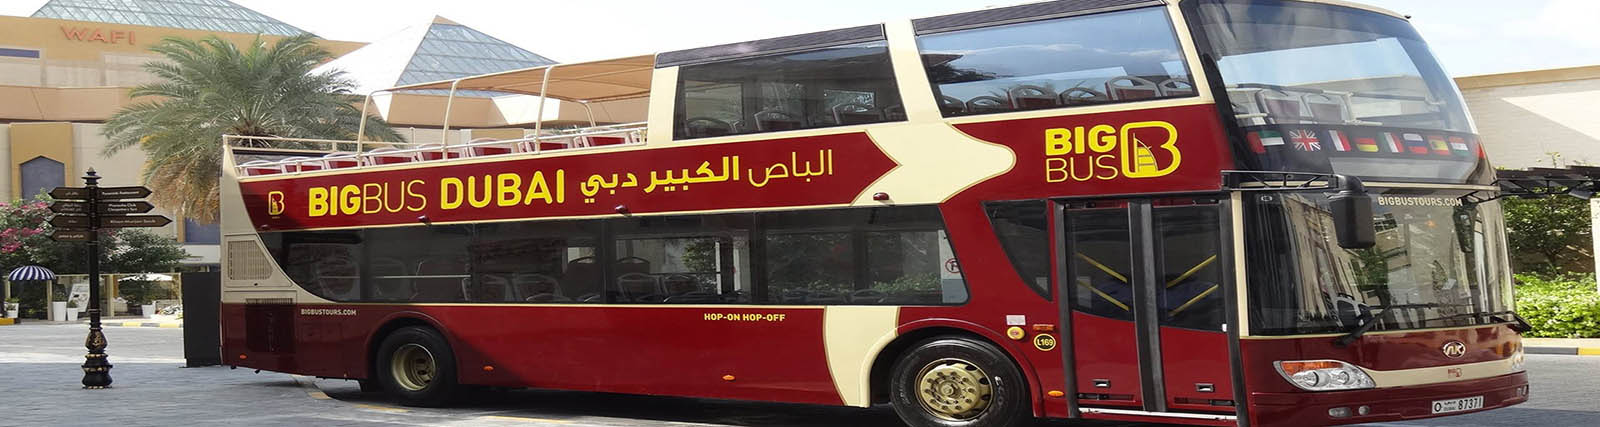 awesome-big-bus-tour-burj-al-arab